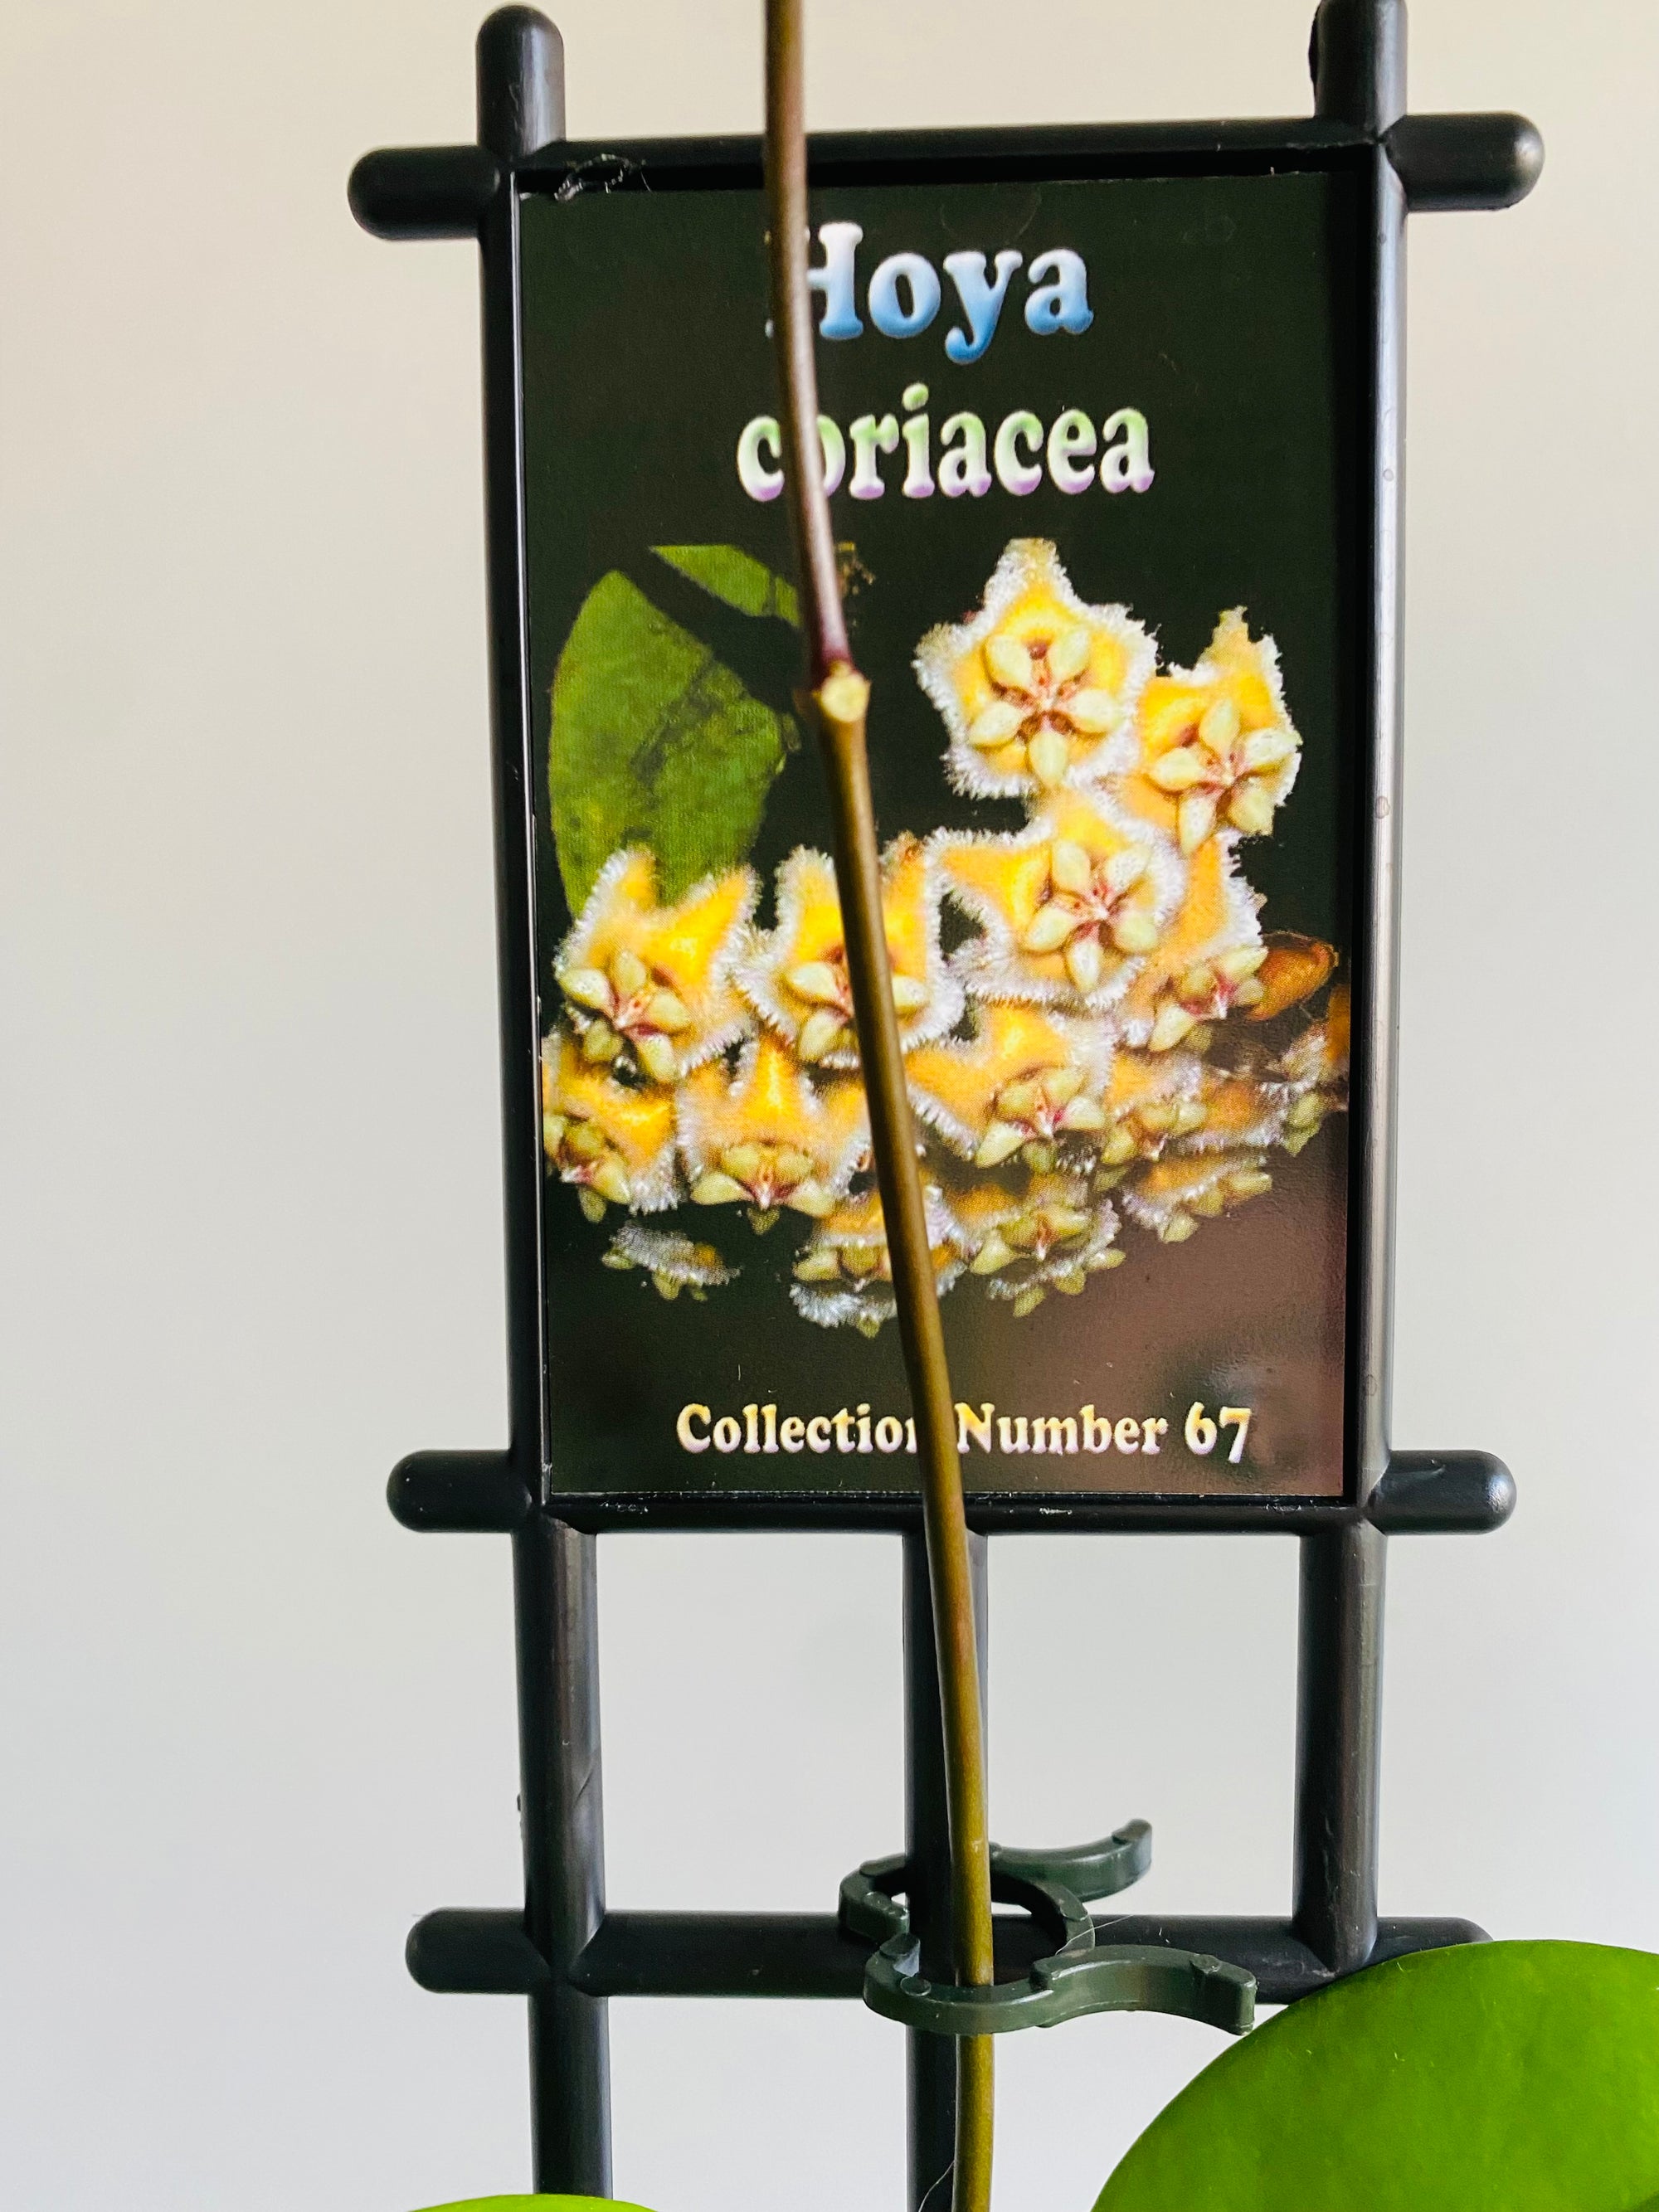 Hoya - Coriacea Collection No. 67